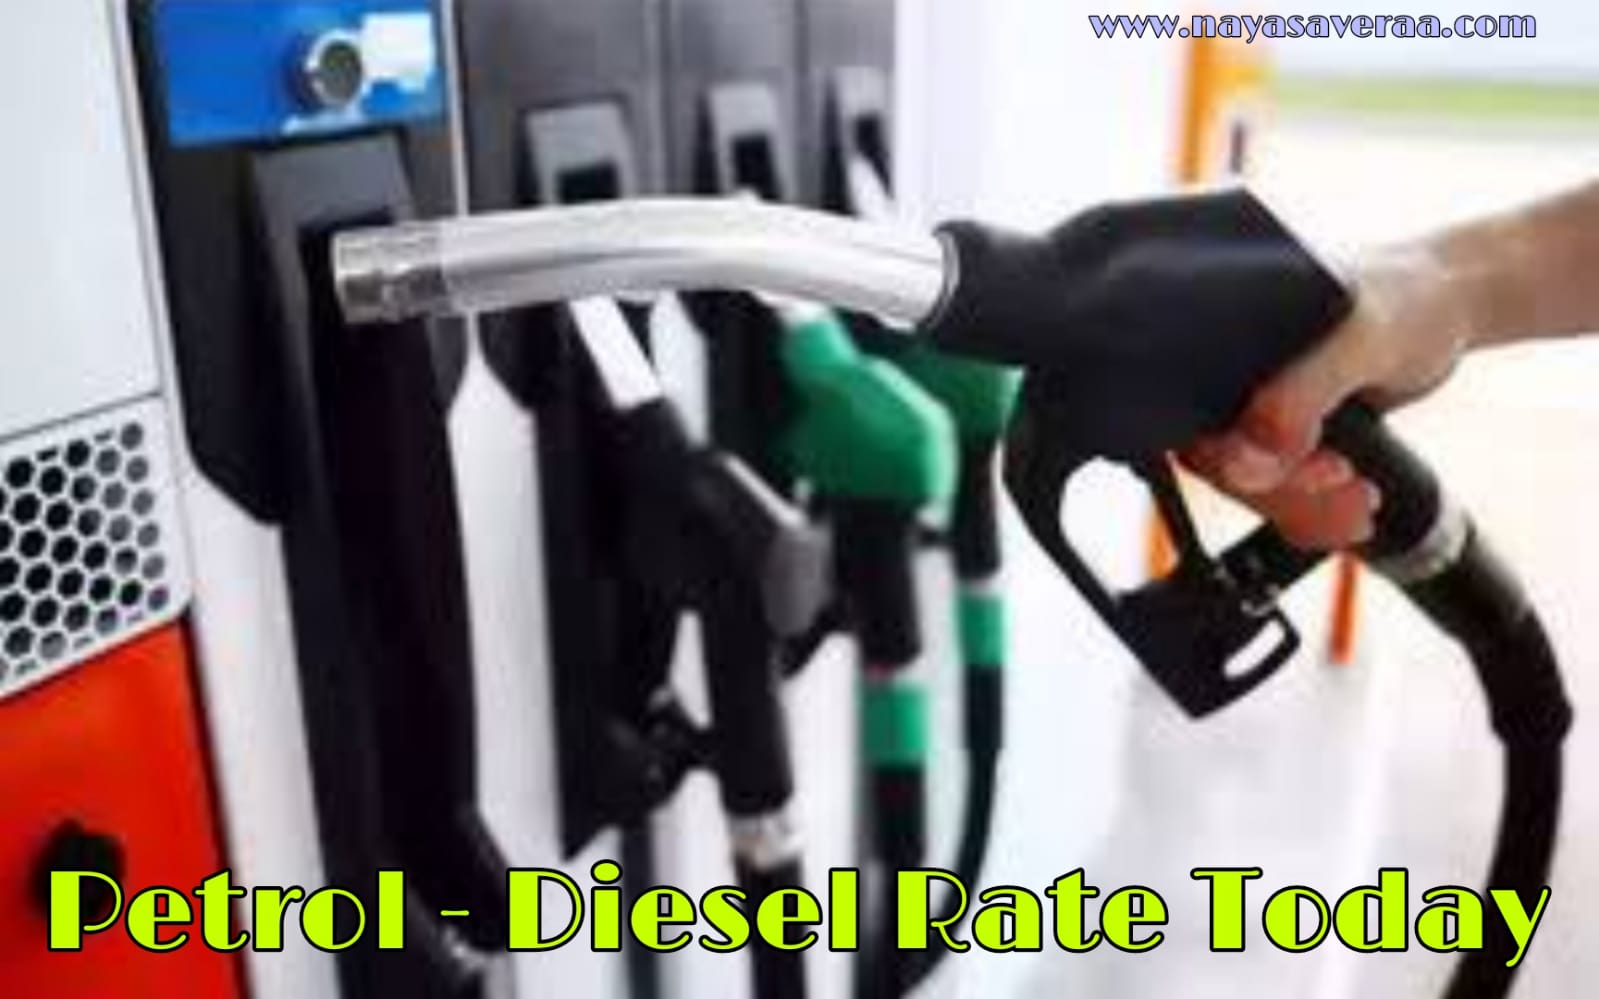 Petrol-Diesel Price Today: दो दिन बाद पेट्रोल डीजल पर आज मिली राहत जानिए क्या है लेटेस्ट रेट्स